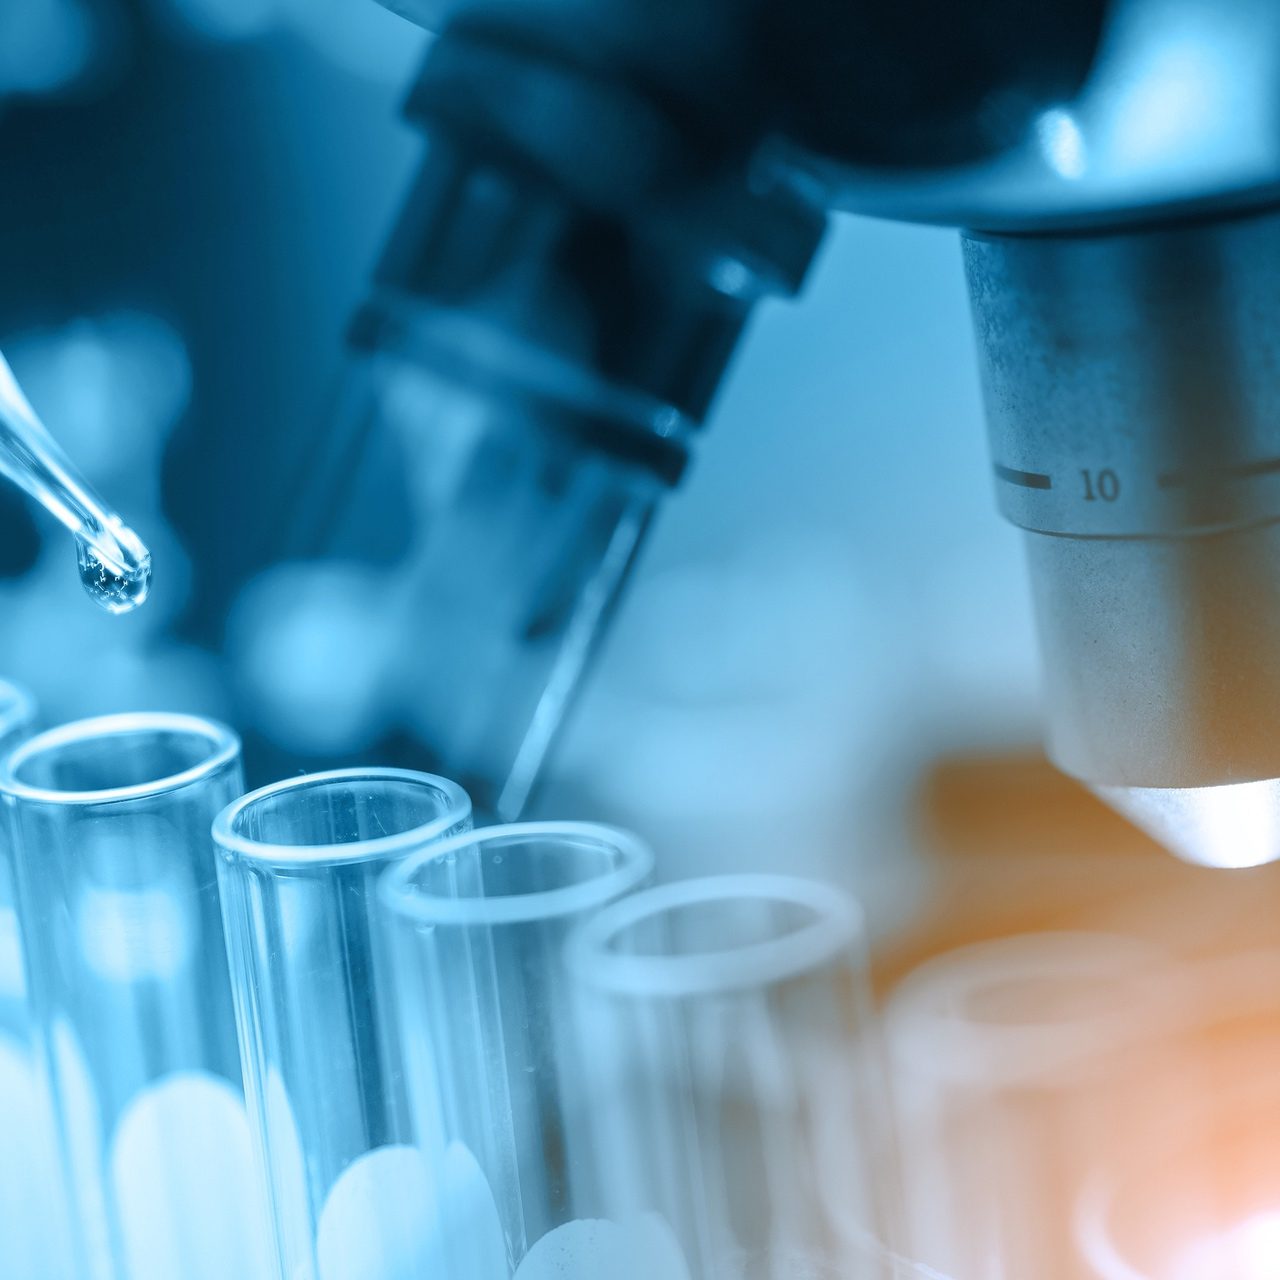 Στο μικροβιολογικό τμήμα της Apex Medical Group θα βρείτε εξειδικευμένους επιστήμονες και τον πλέον σύγχρονο και τελευταίας τεχνολογίας εξοπλισμό.